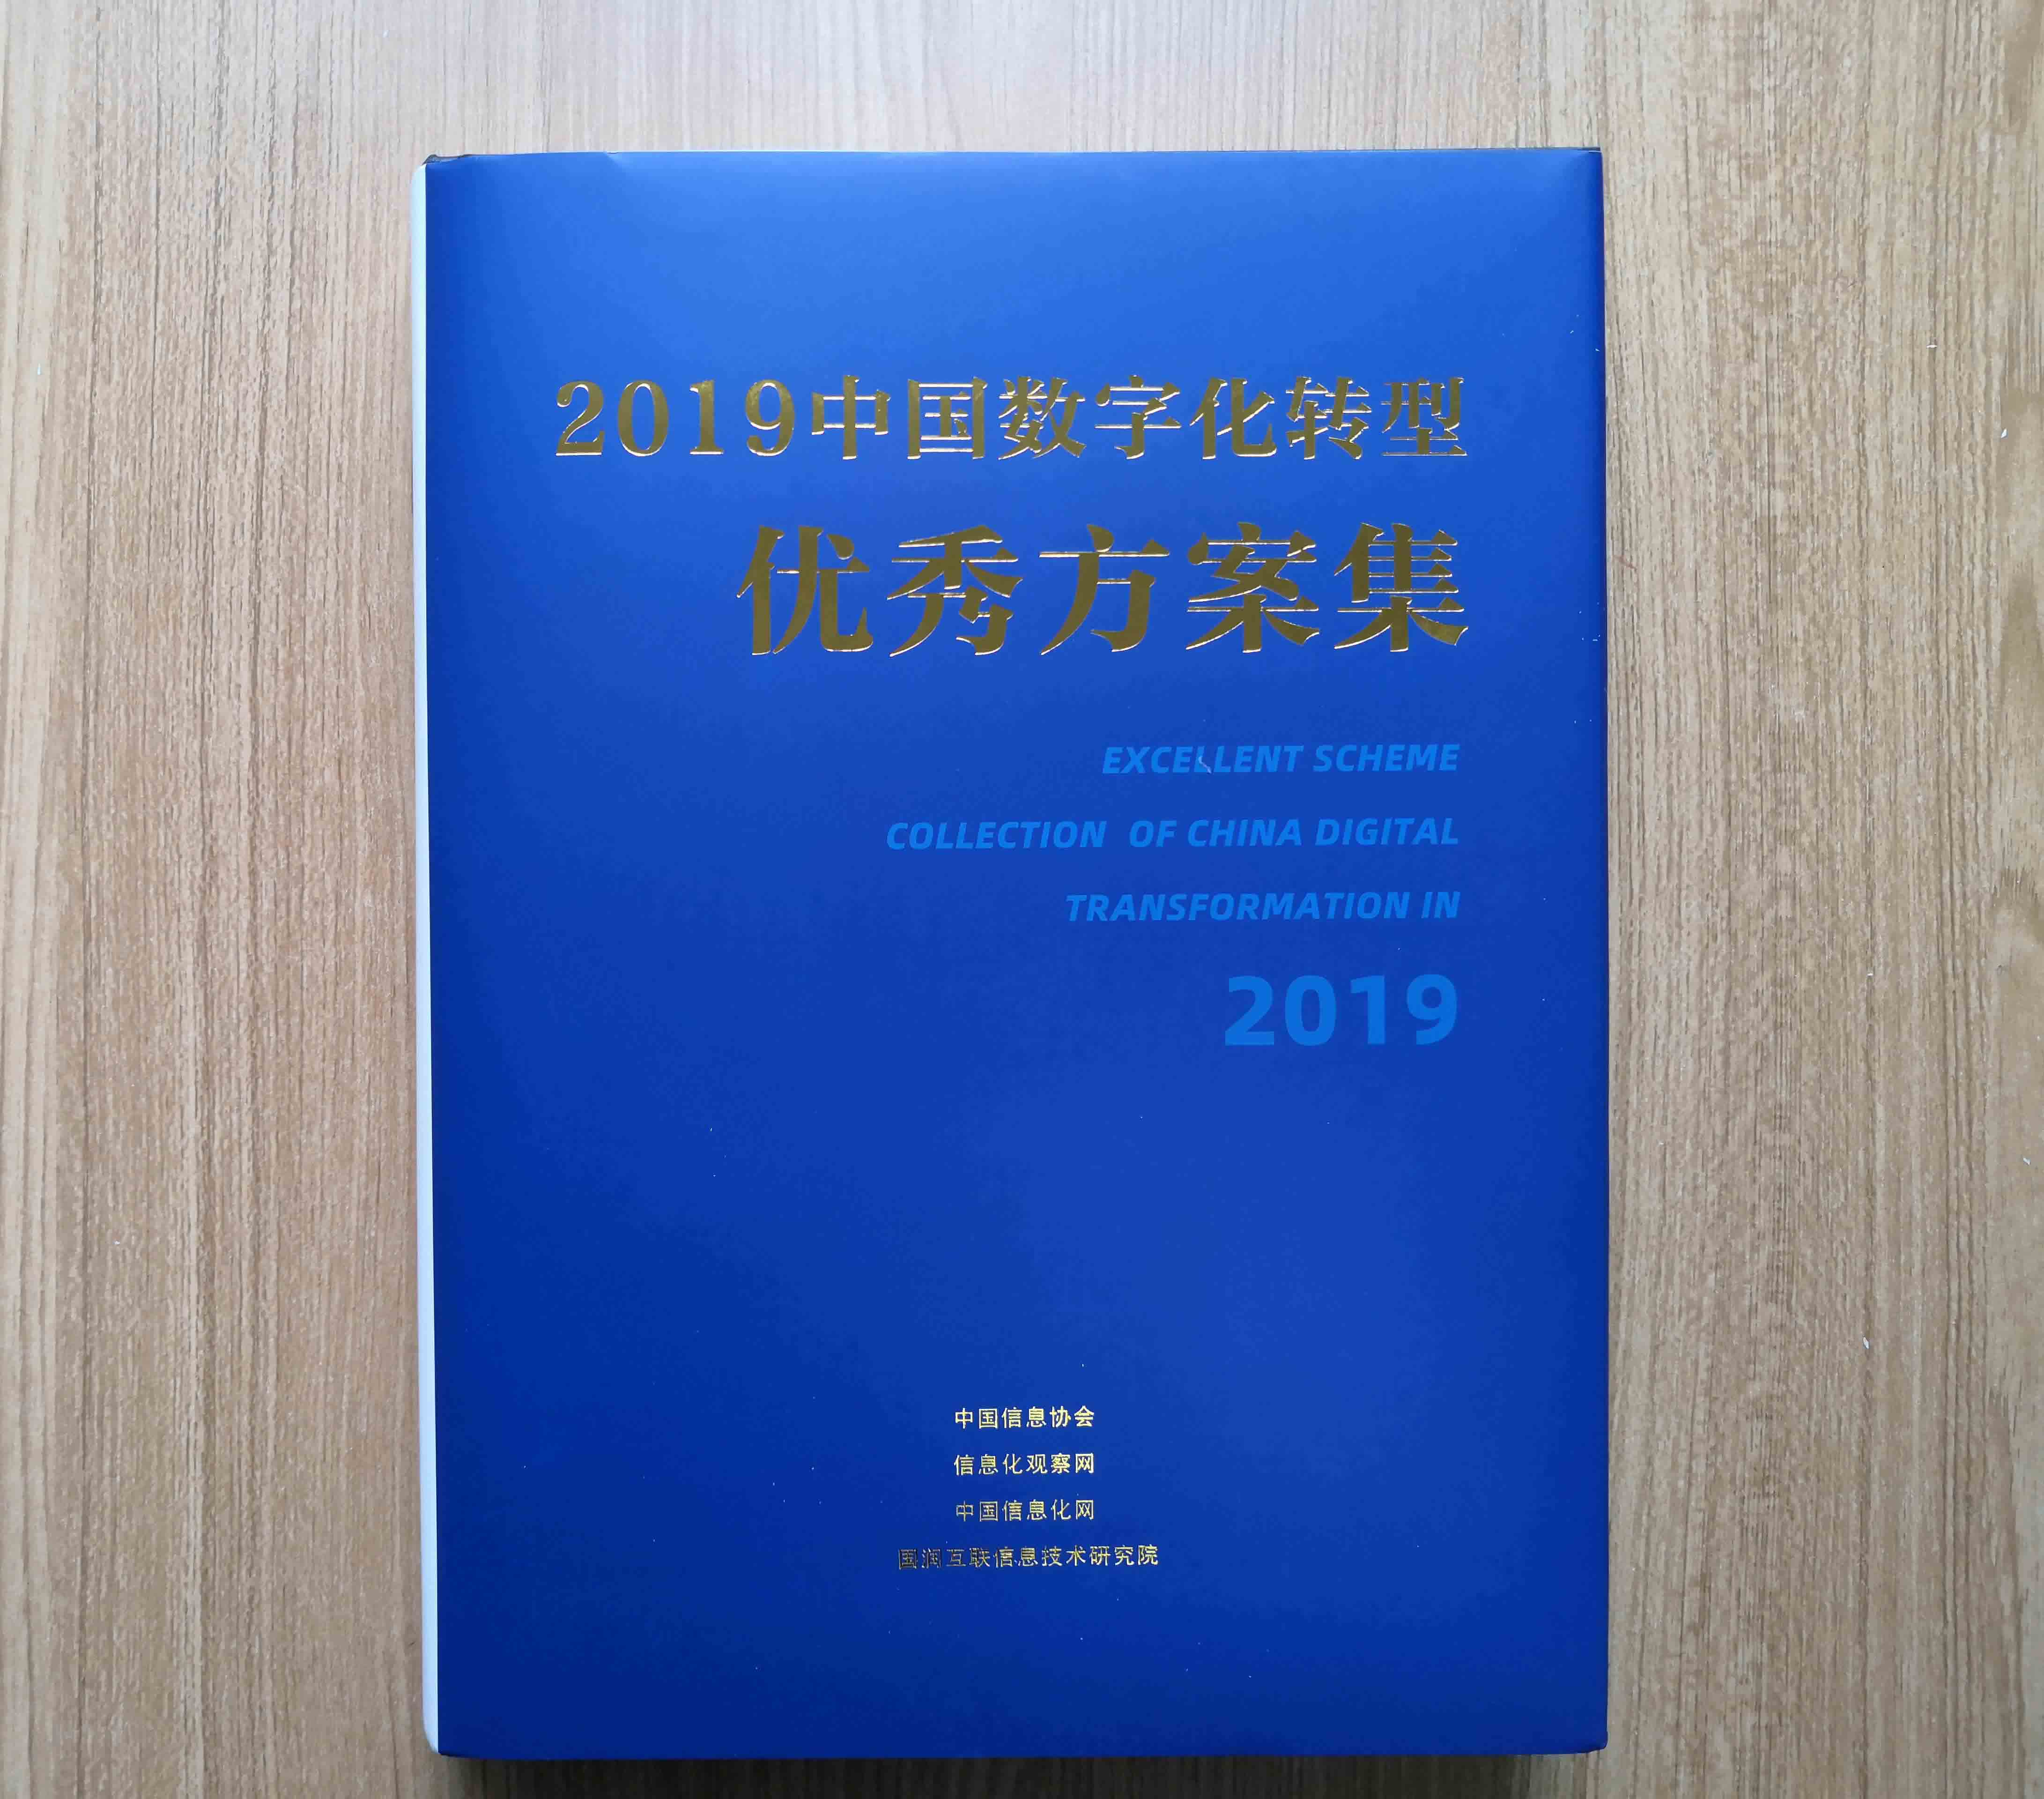 守内安入选《2019中国数字化转型优秀方案集》